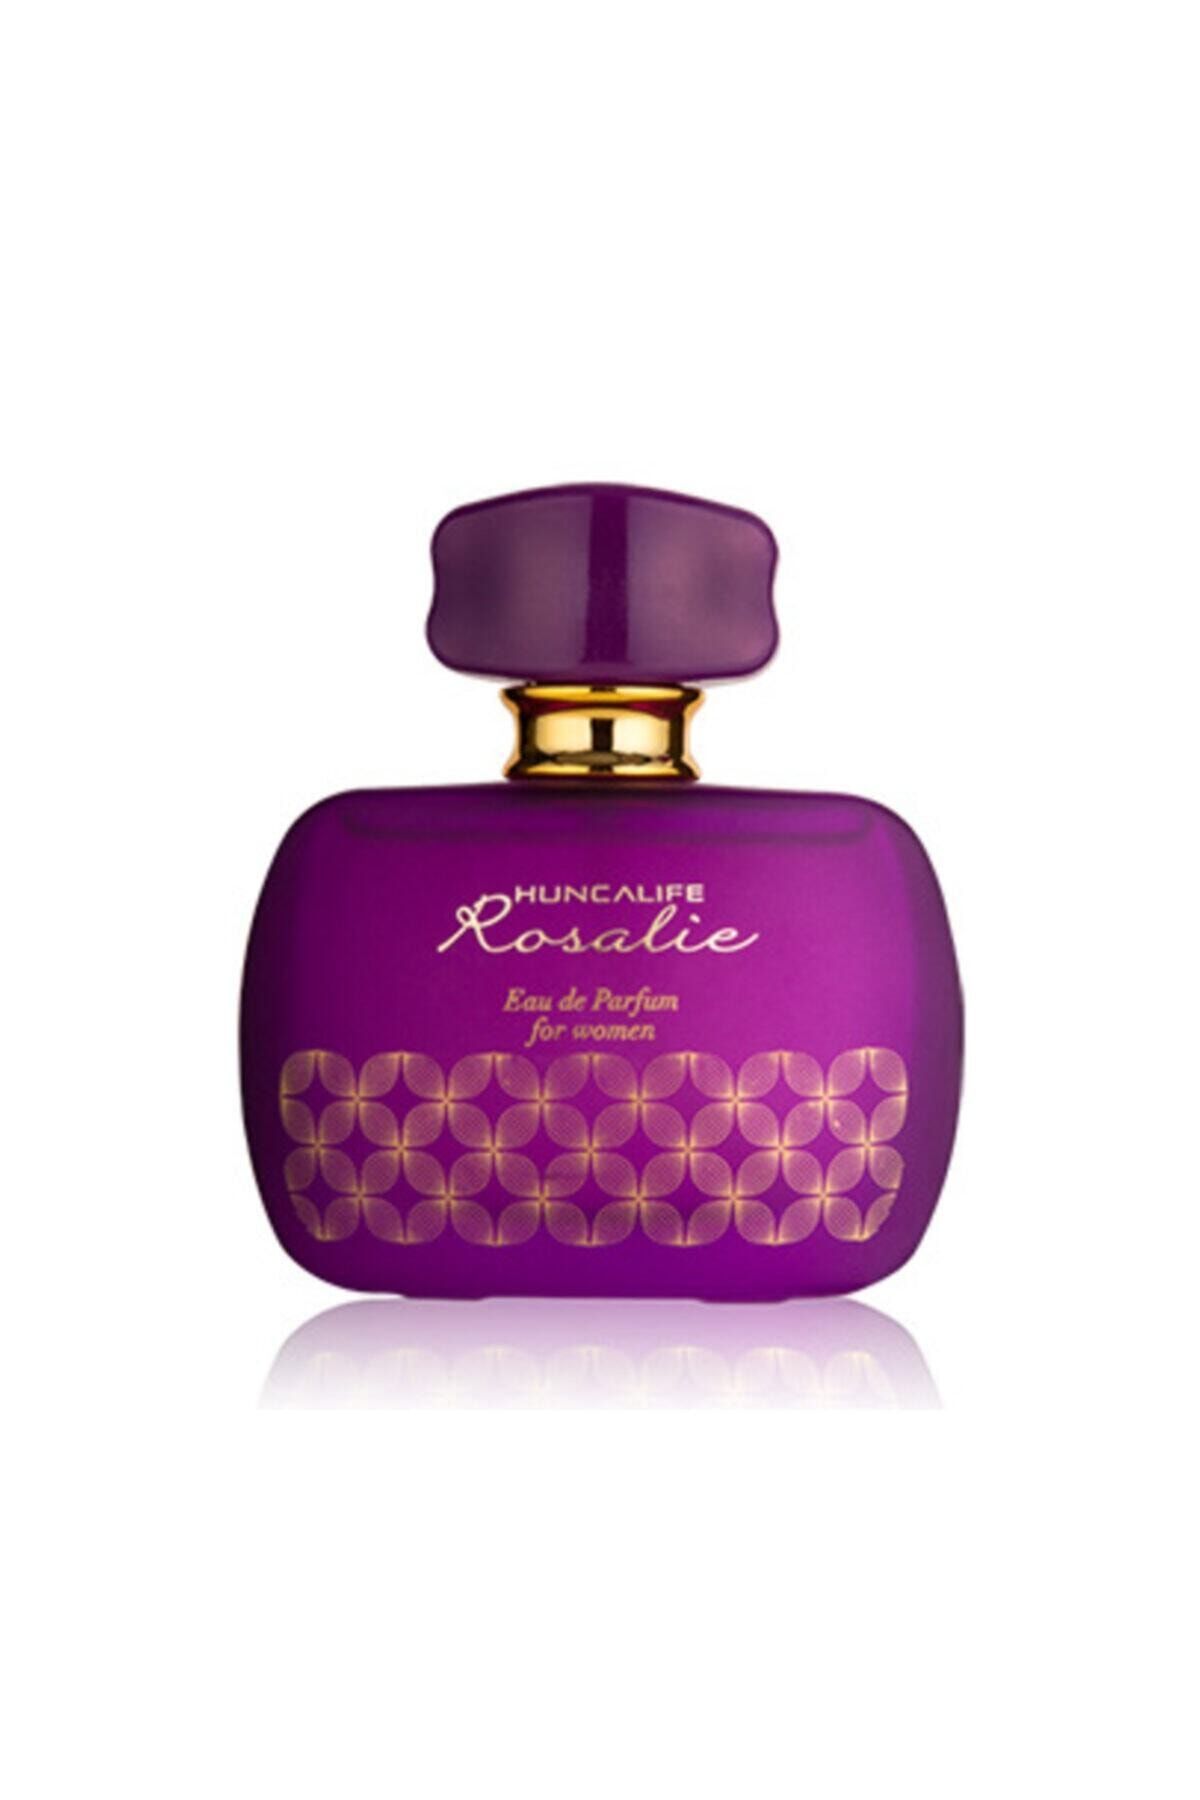 Huncalife Rosalie Kadın Edp Parfüm 50 ml